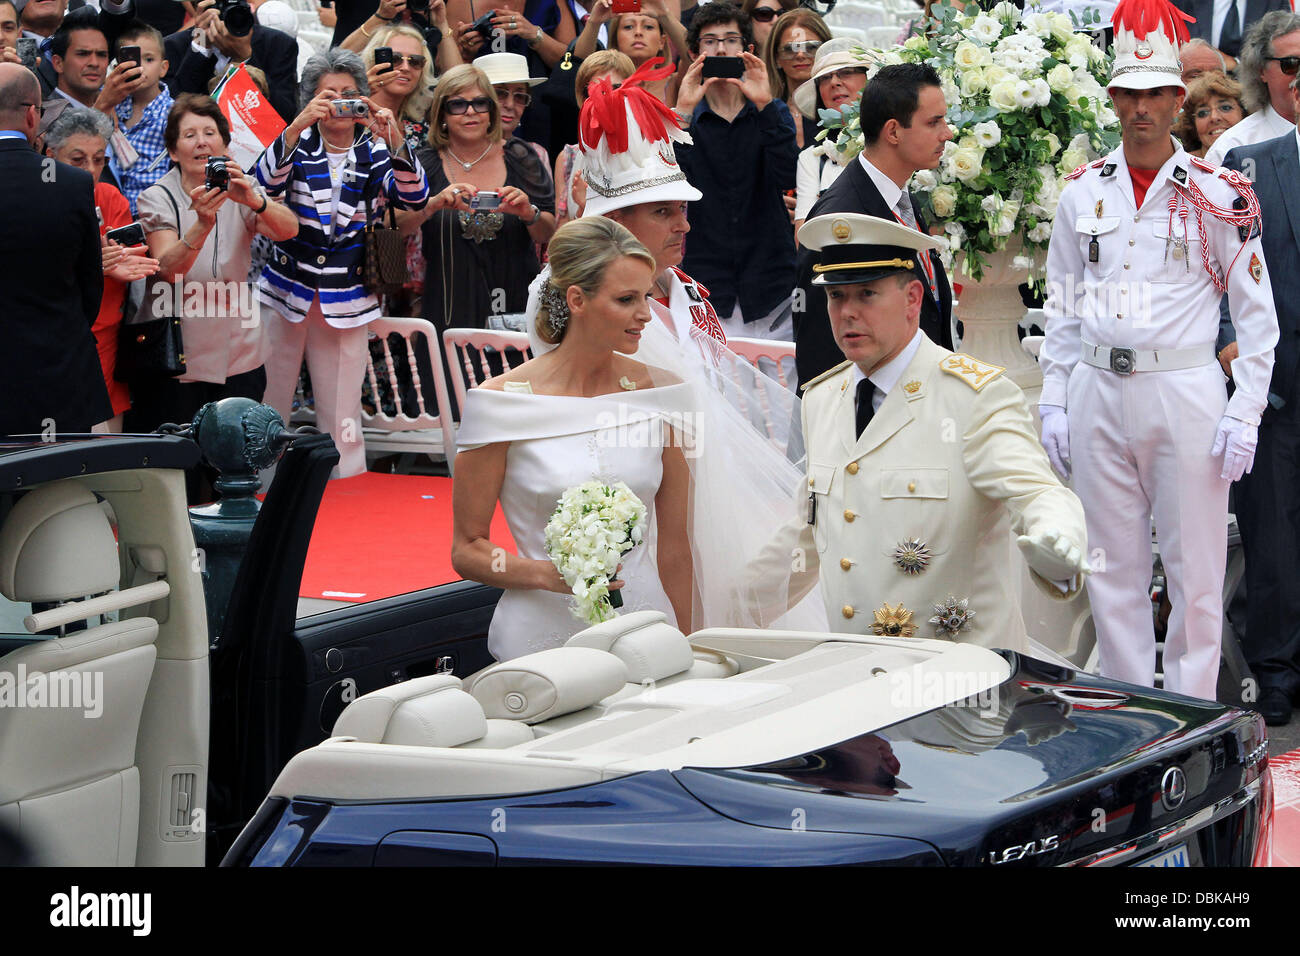 Le Prince Albert II de Monaco et Charlene Wittstock cérémonie religieuse du mariage du Prince Albert II de Monaco à Charlene Wittstock en cour d'honneur au Palais du Prince, Monte Carlo, Monaco - 02.07.11 Banque D'Images